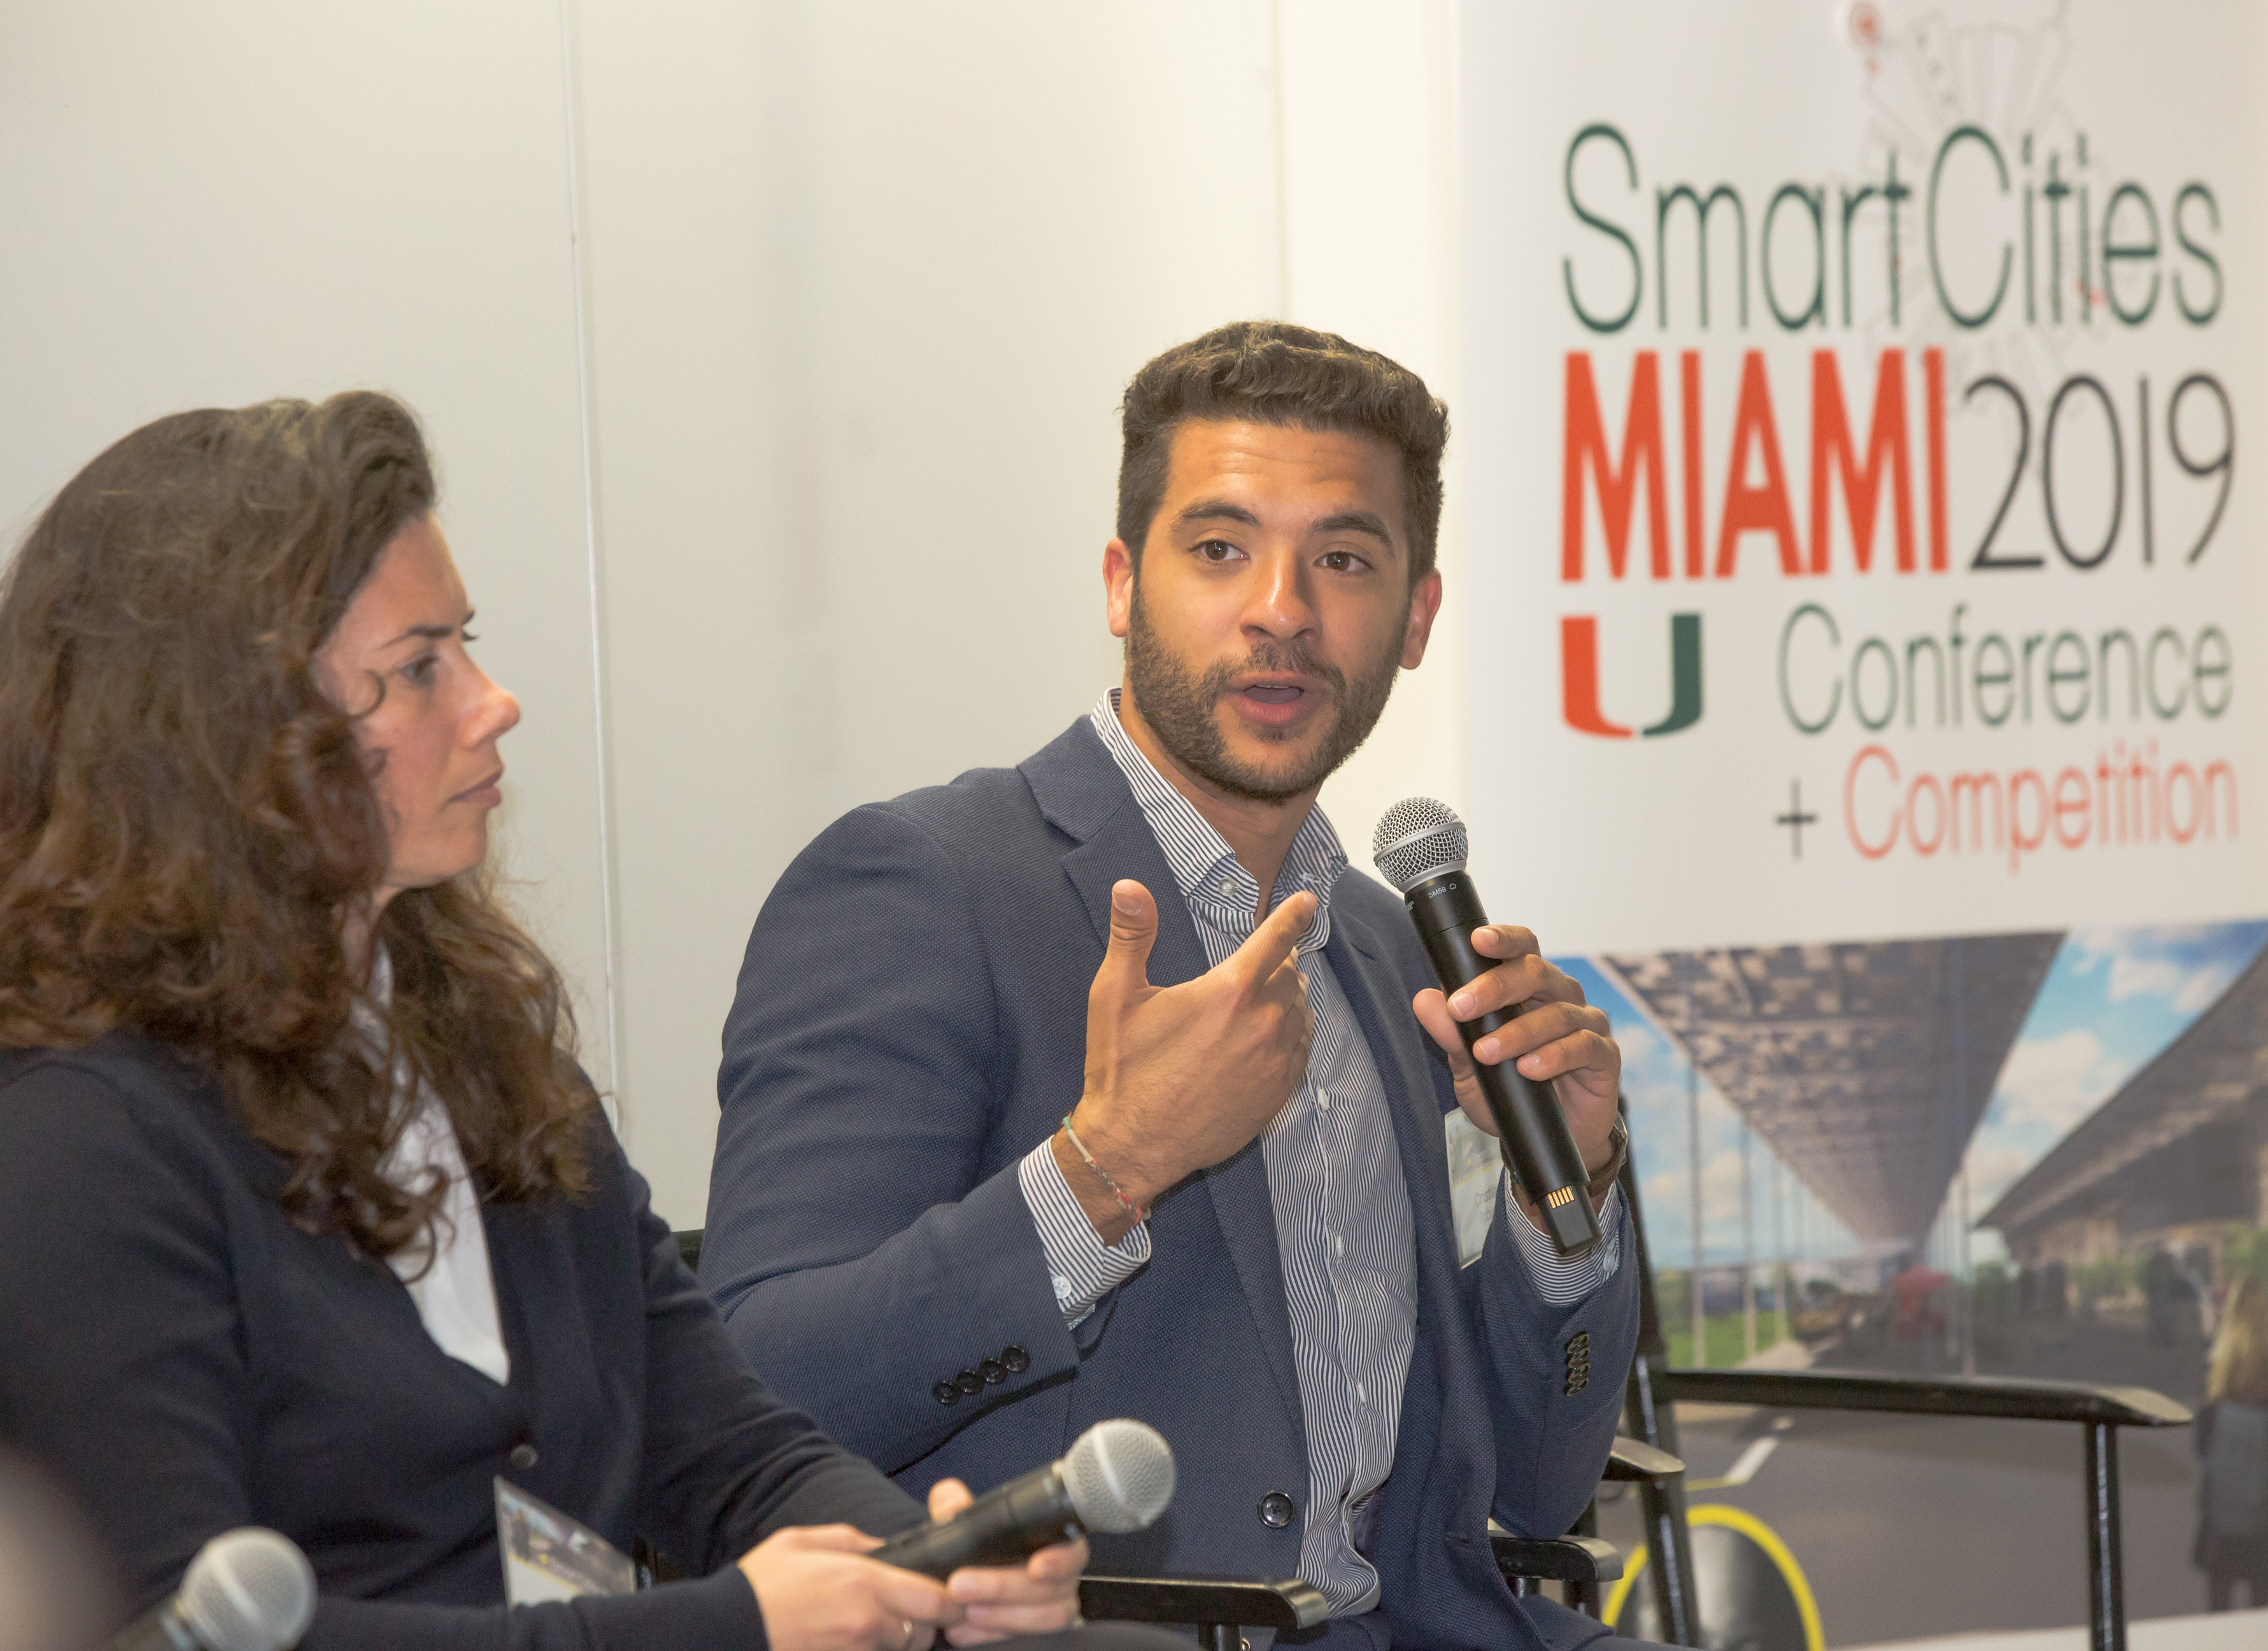 Smart Cities MIAMI 2019